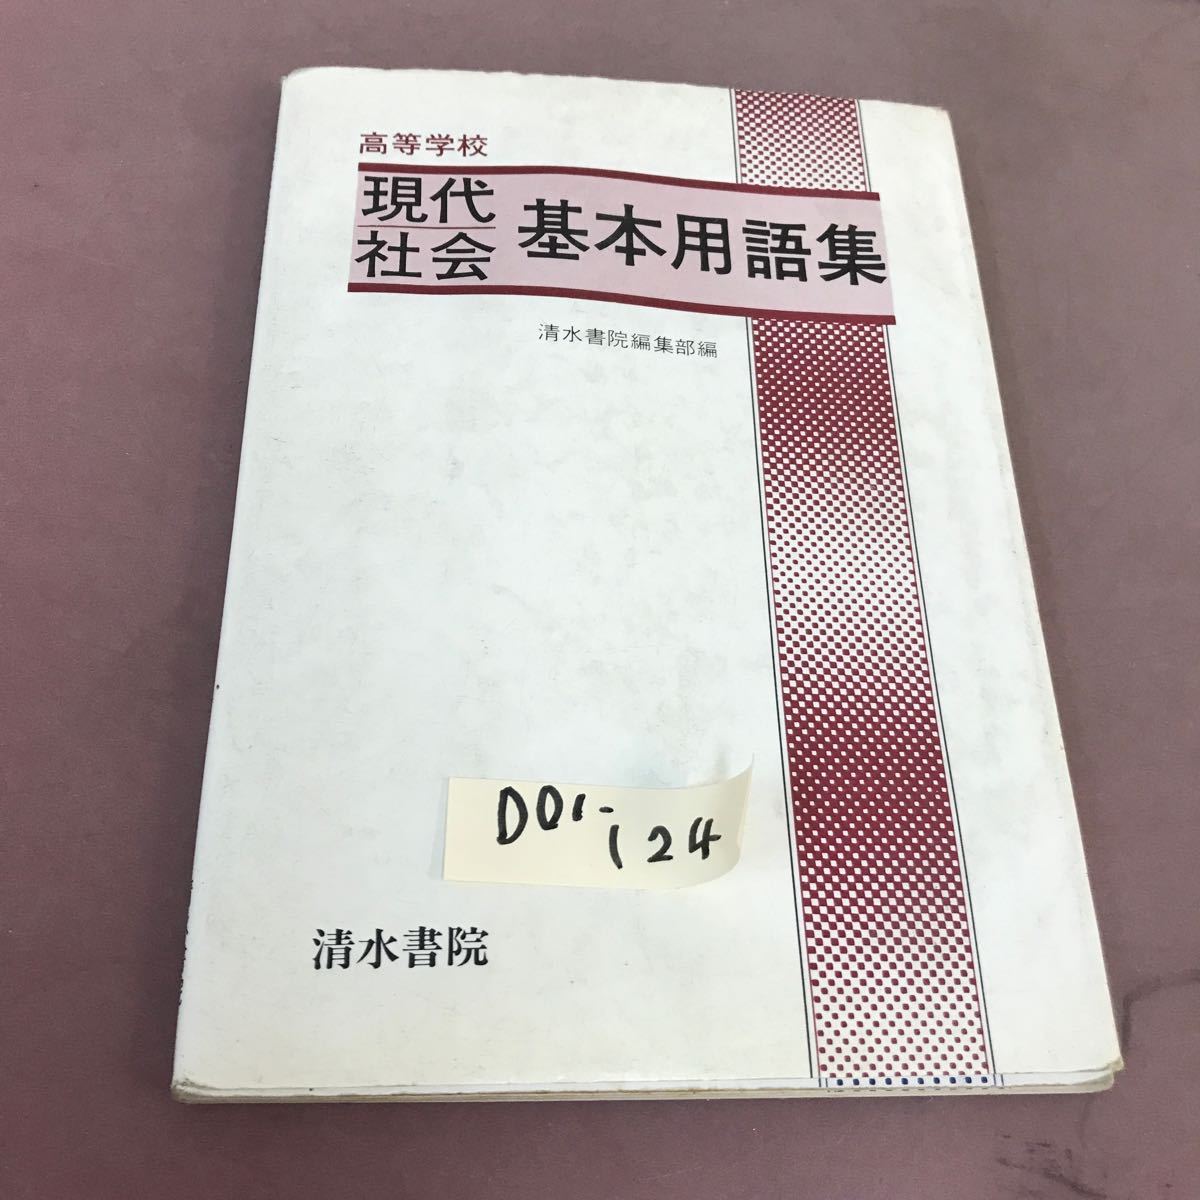 オリジナル  D01-124 清水書院 現代社会基本用語集 社会